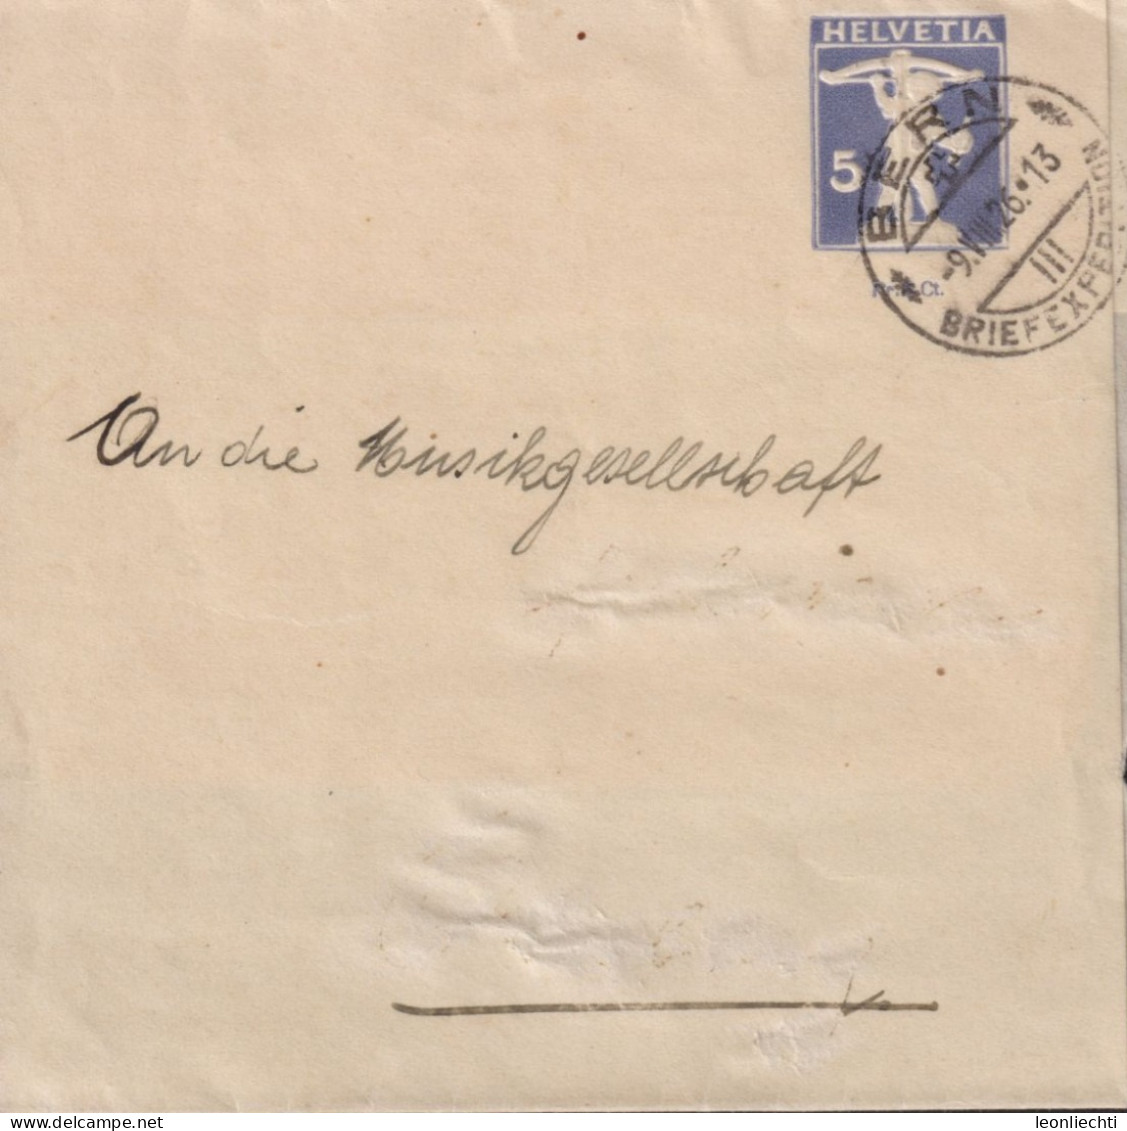 1926 Schweiz Streifband Zum: PrU 21 5 Cts Grauviolett, Tell Knabe ⵙ BERN BRIEFEXPEDITION 9.Vlll.26 - Stamped Stationery